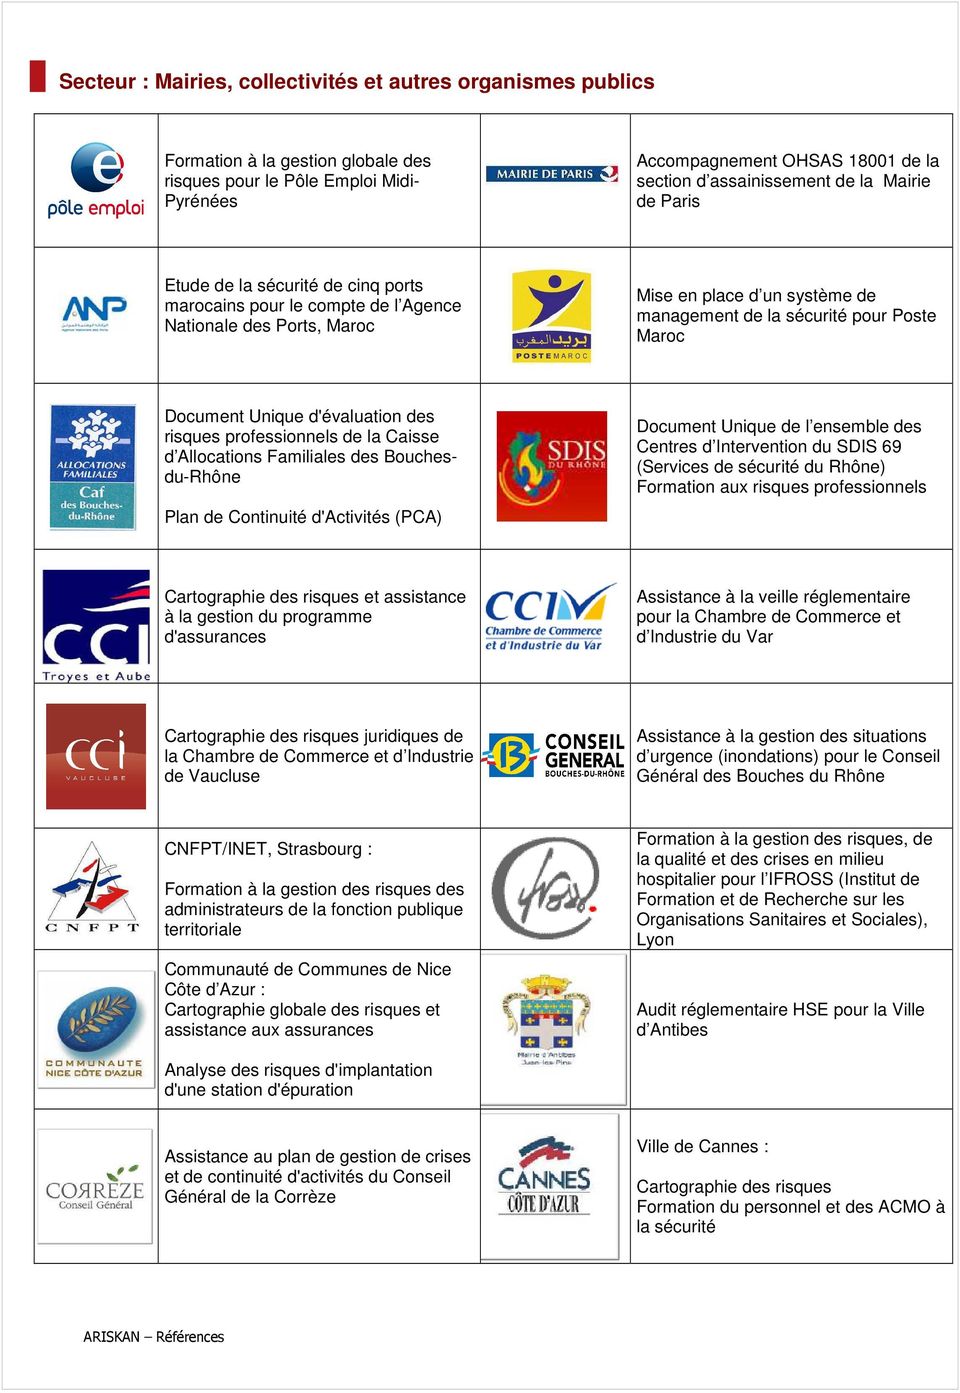 Document Unique d'évaluation des risques professionnels de la Caisse d Allocations Familiales des Bouchesdu-Rhône Plan de Continuité d'activités (PCA) Document Unique de l ensemble des Centres d